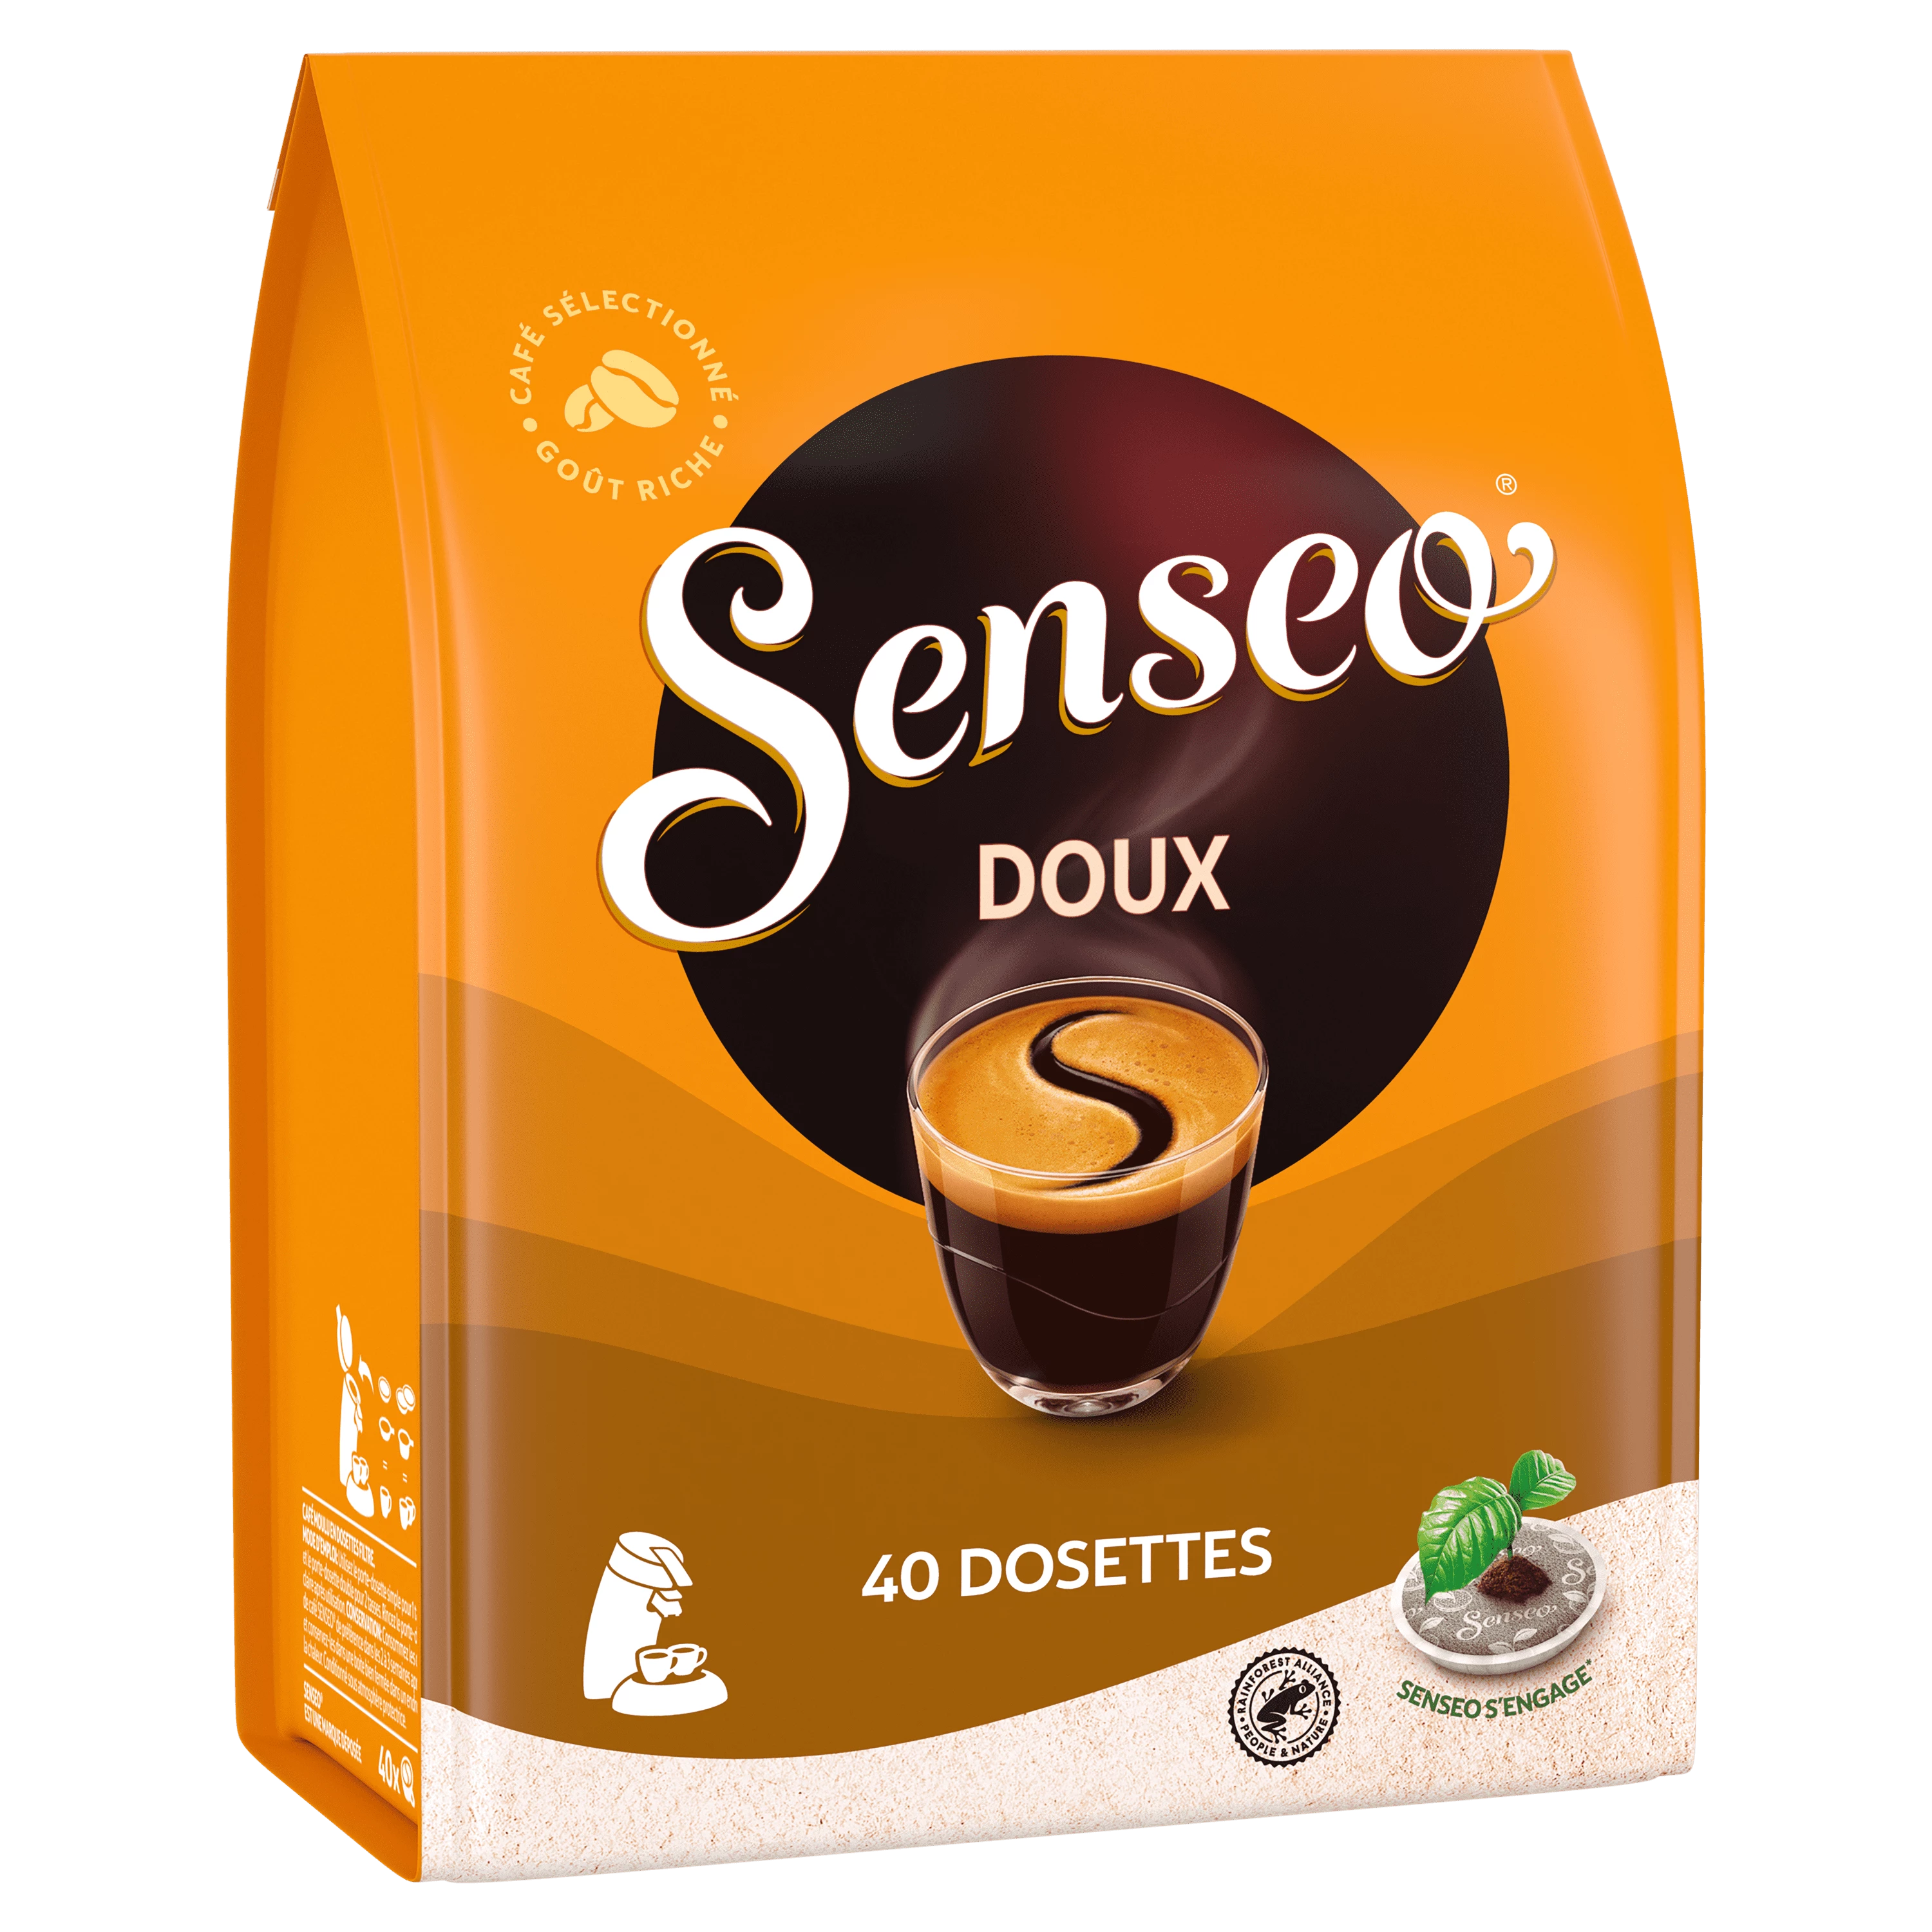 Senseo - 🎁 tentez de remporter votre machine et du délicieux café Senseo  en répondant à cette question en commentaire : Quel anniversaire célébrait  Senseo cette année ? Les 5 vainqueurs seront